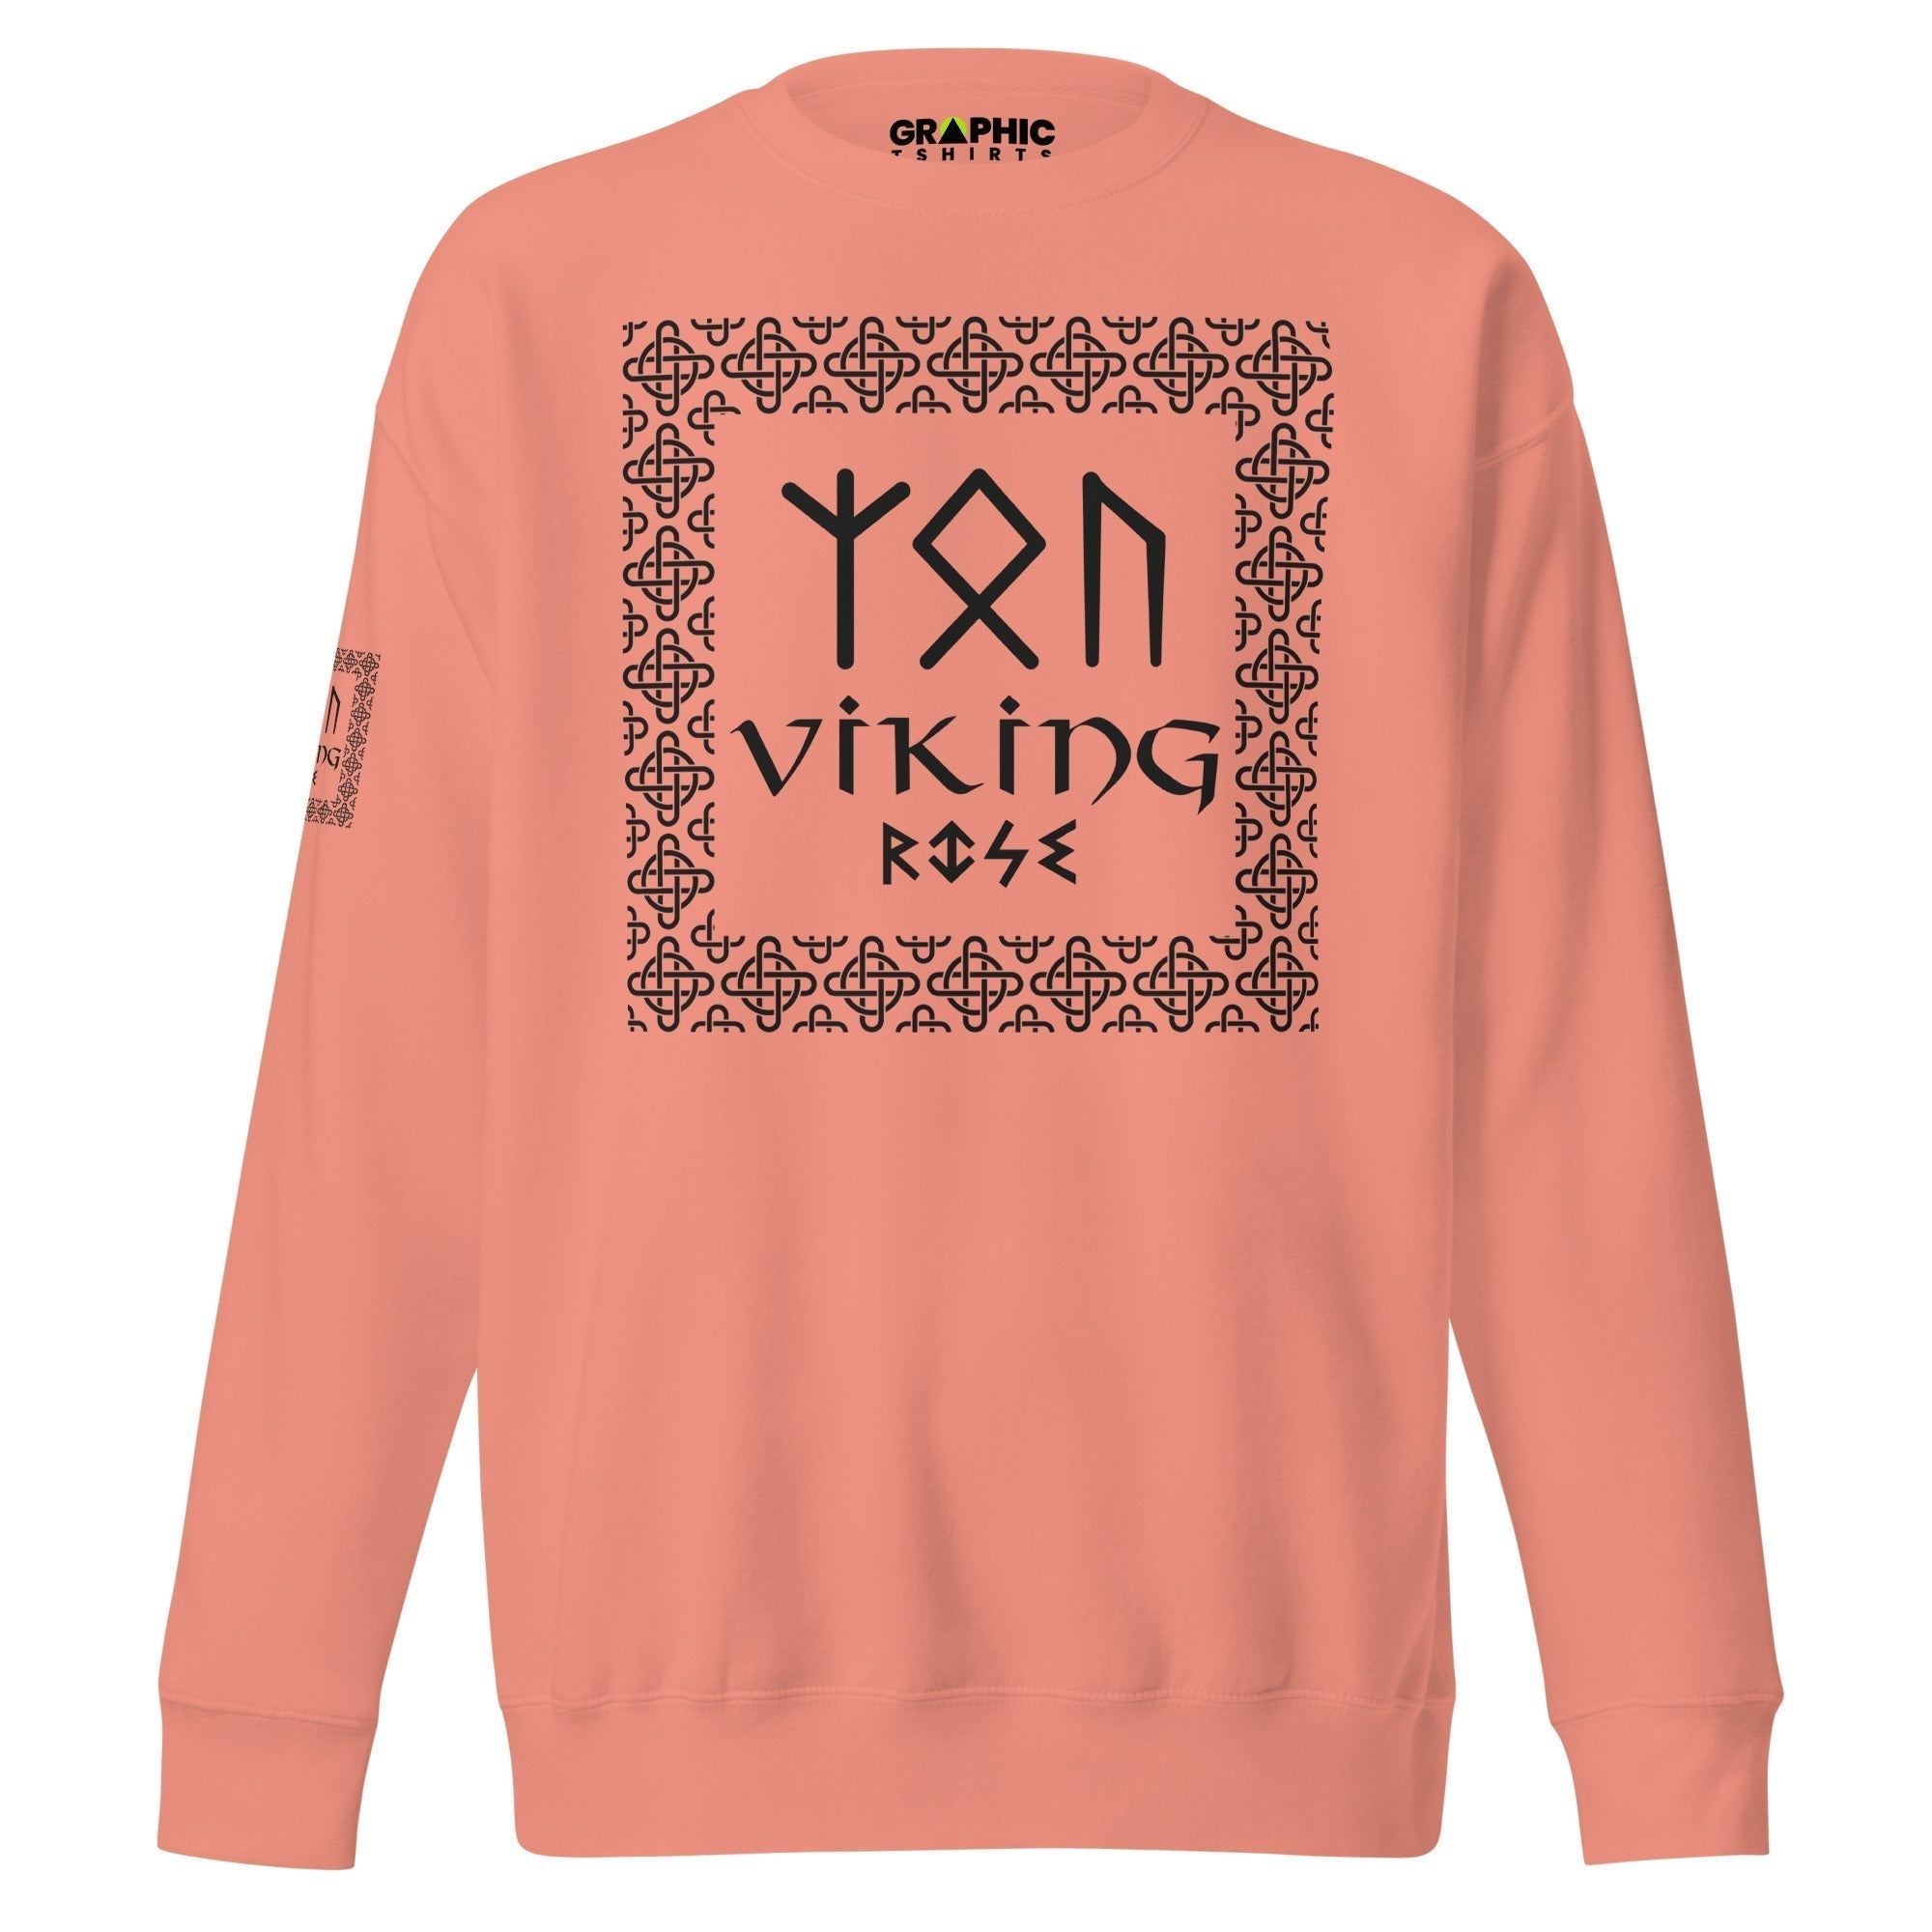 Unisex Premium Sweatshirt - Viking Rise - GRAPHIC T-SHIRTS